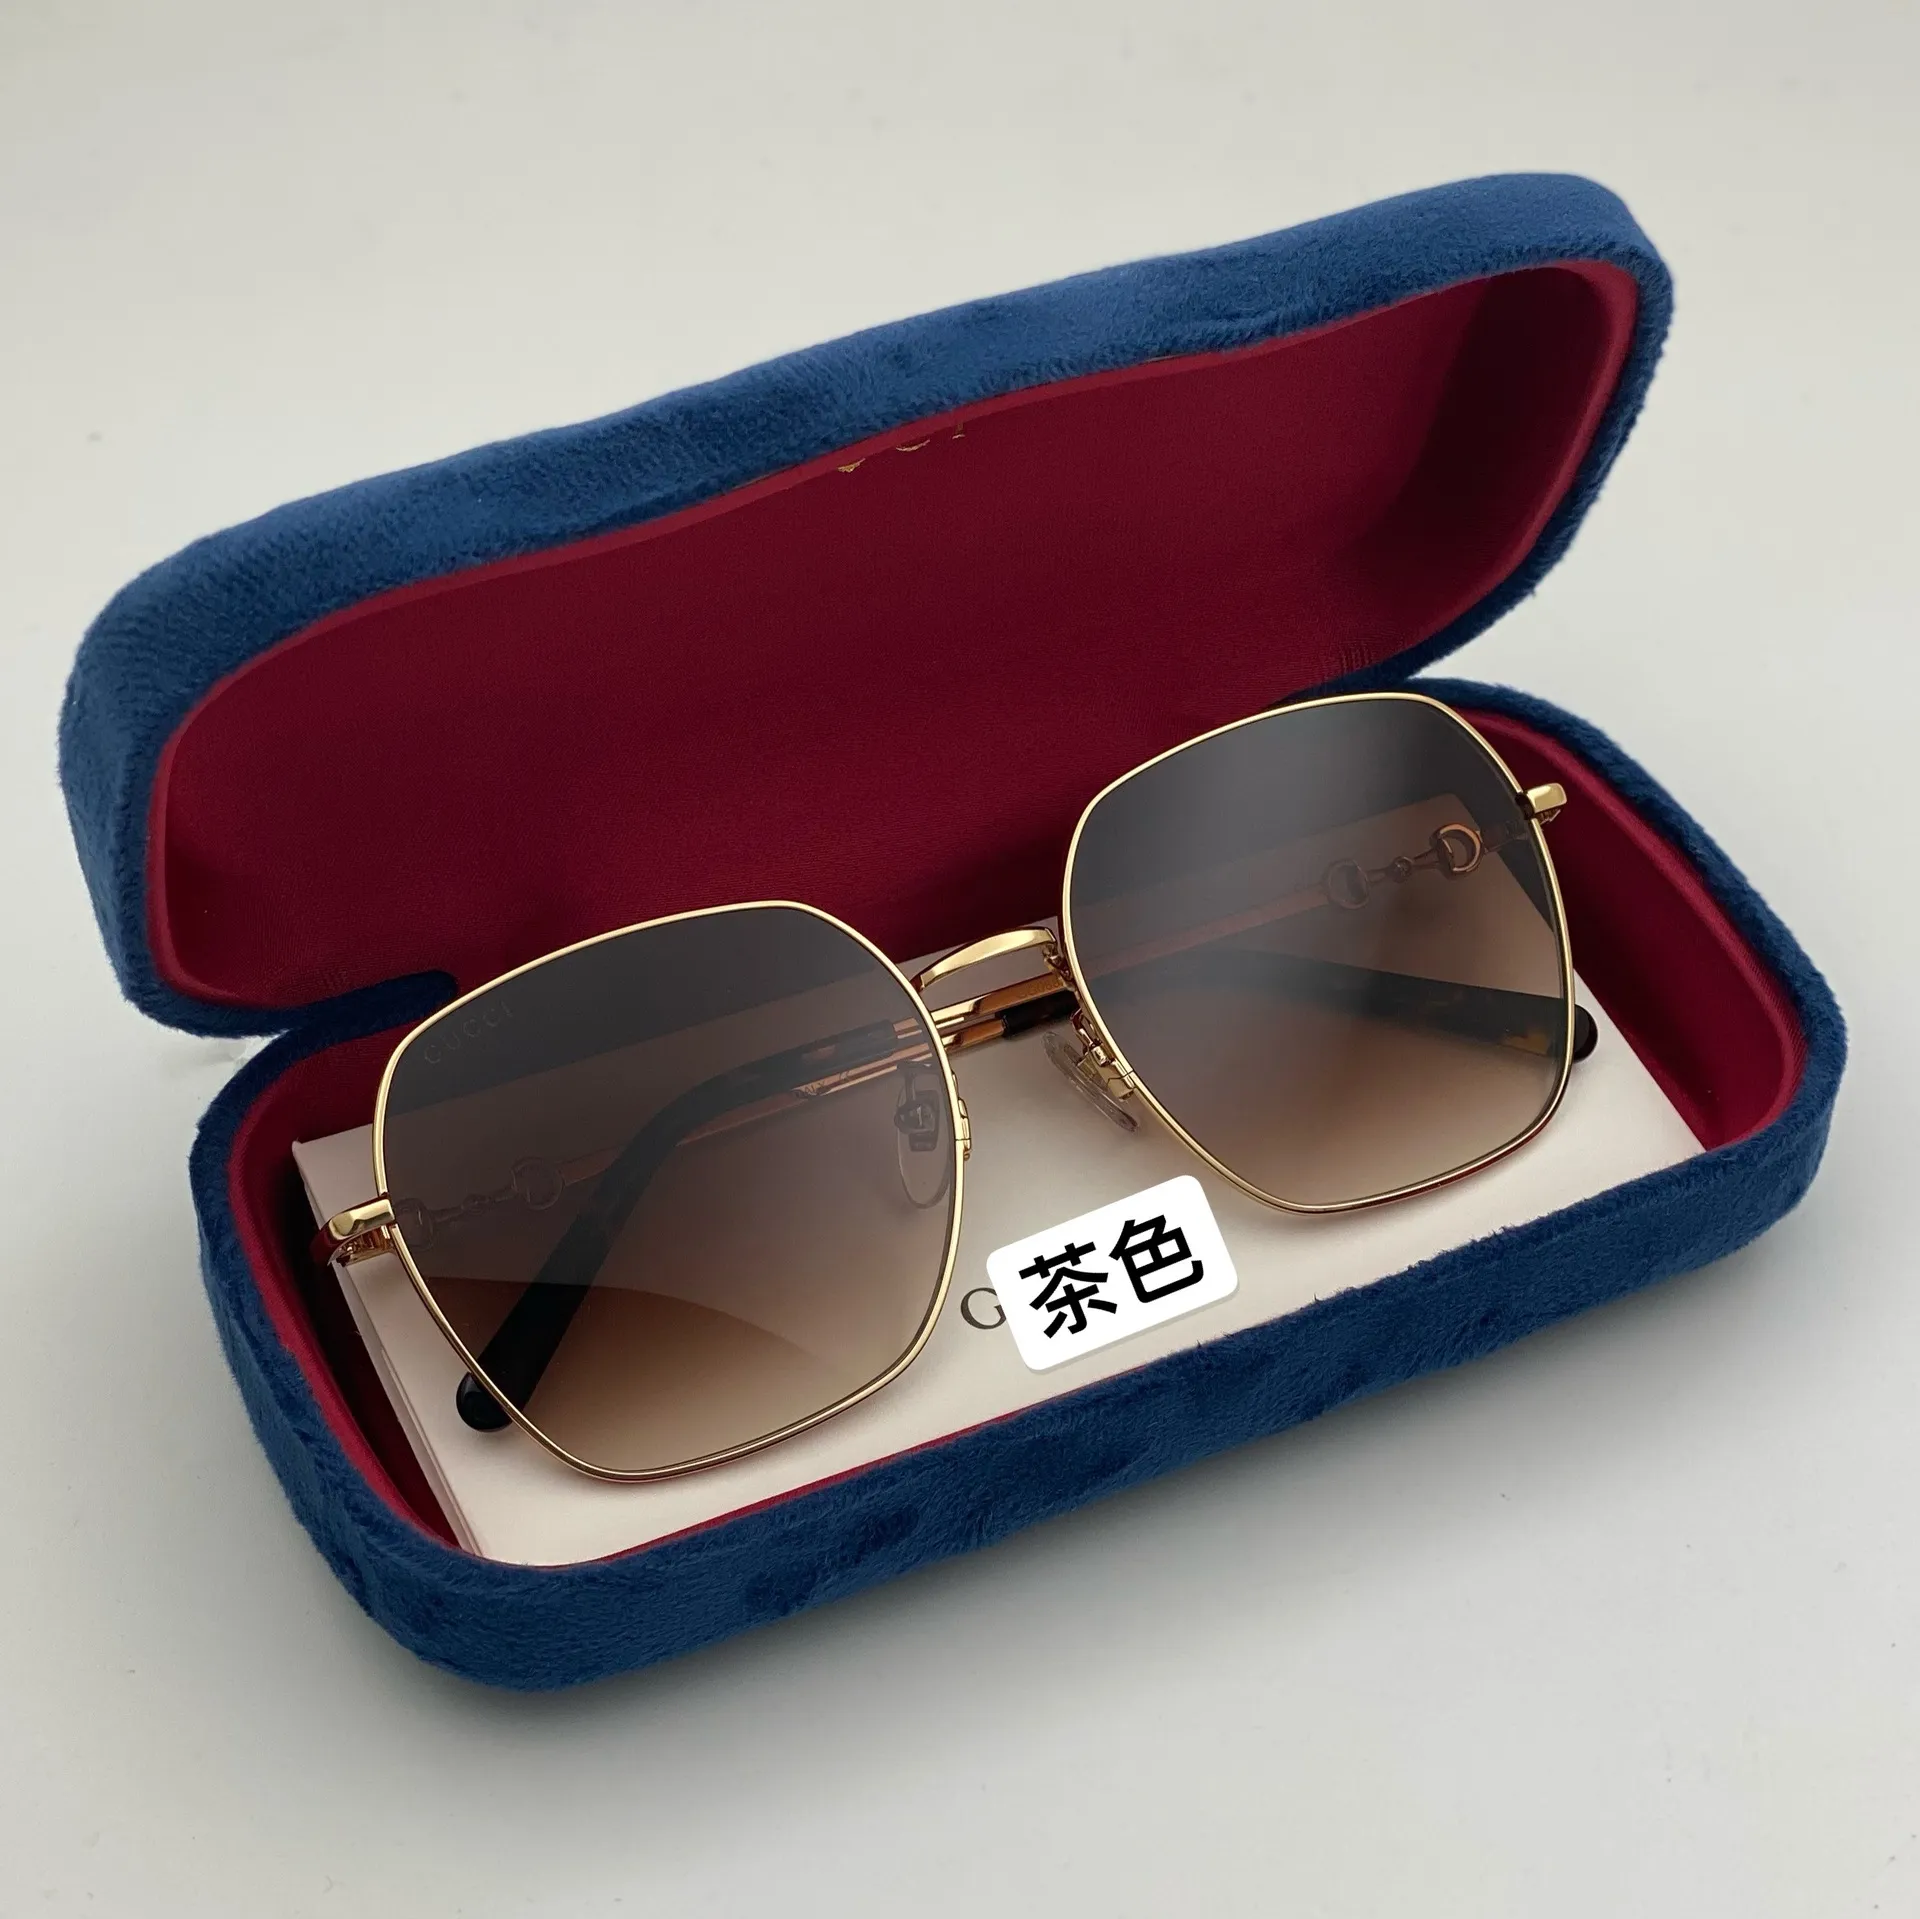 Herren- und Damen-Sonnenbrille mit Farbverlauf, hellbraun, Vintage-Stil, runde Form, Vollformat-Modebrille